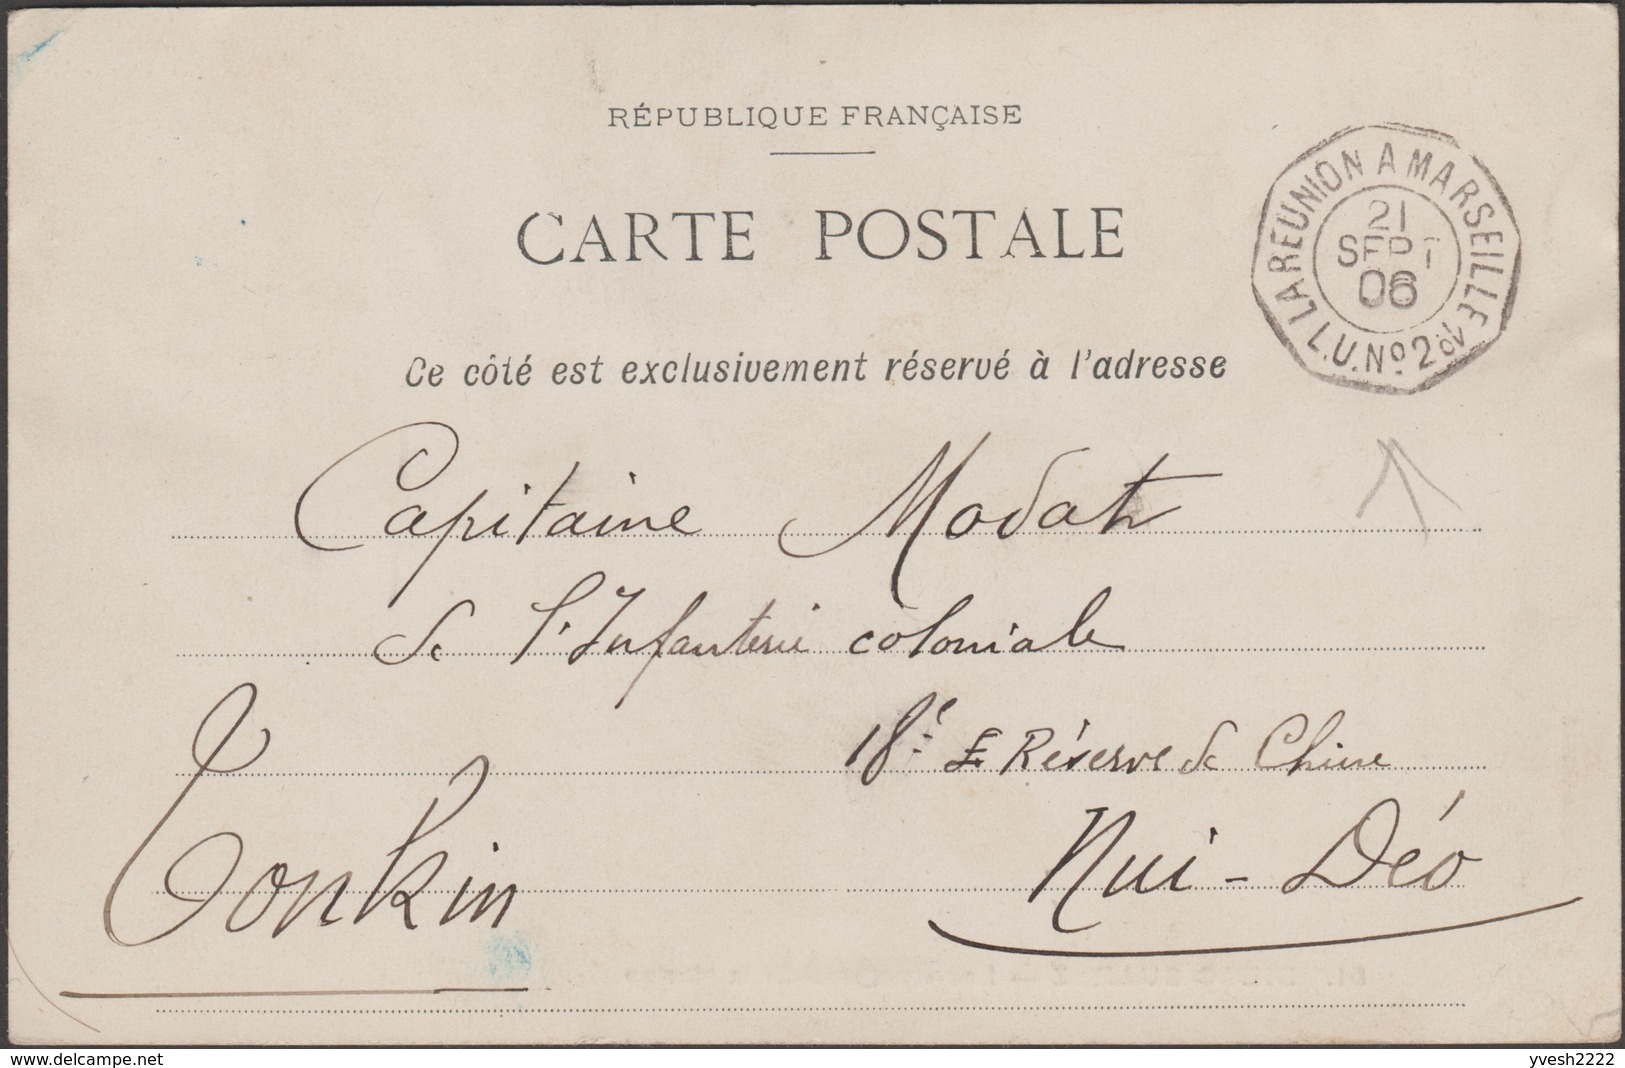 Réunion 1906. Carte De Diego-Suarez Au Tonkin. Un Crétin A Enlevé Le Timbre Au Verso. Cachet Maritime Splendide - Lettres & Documents